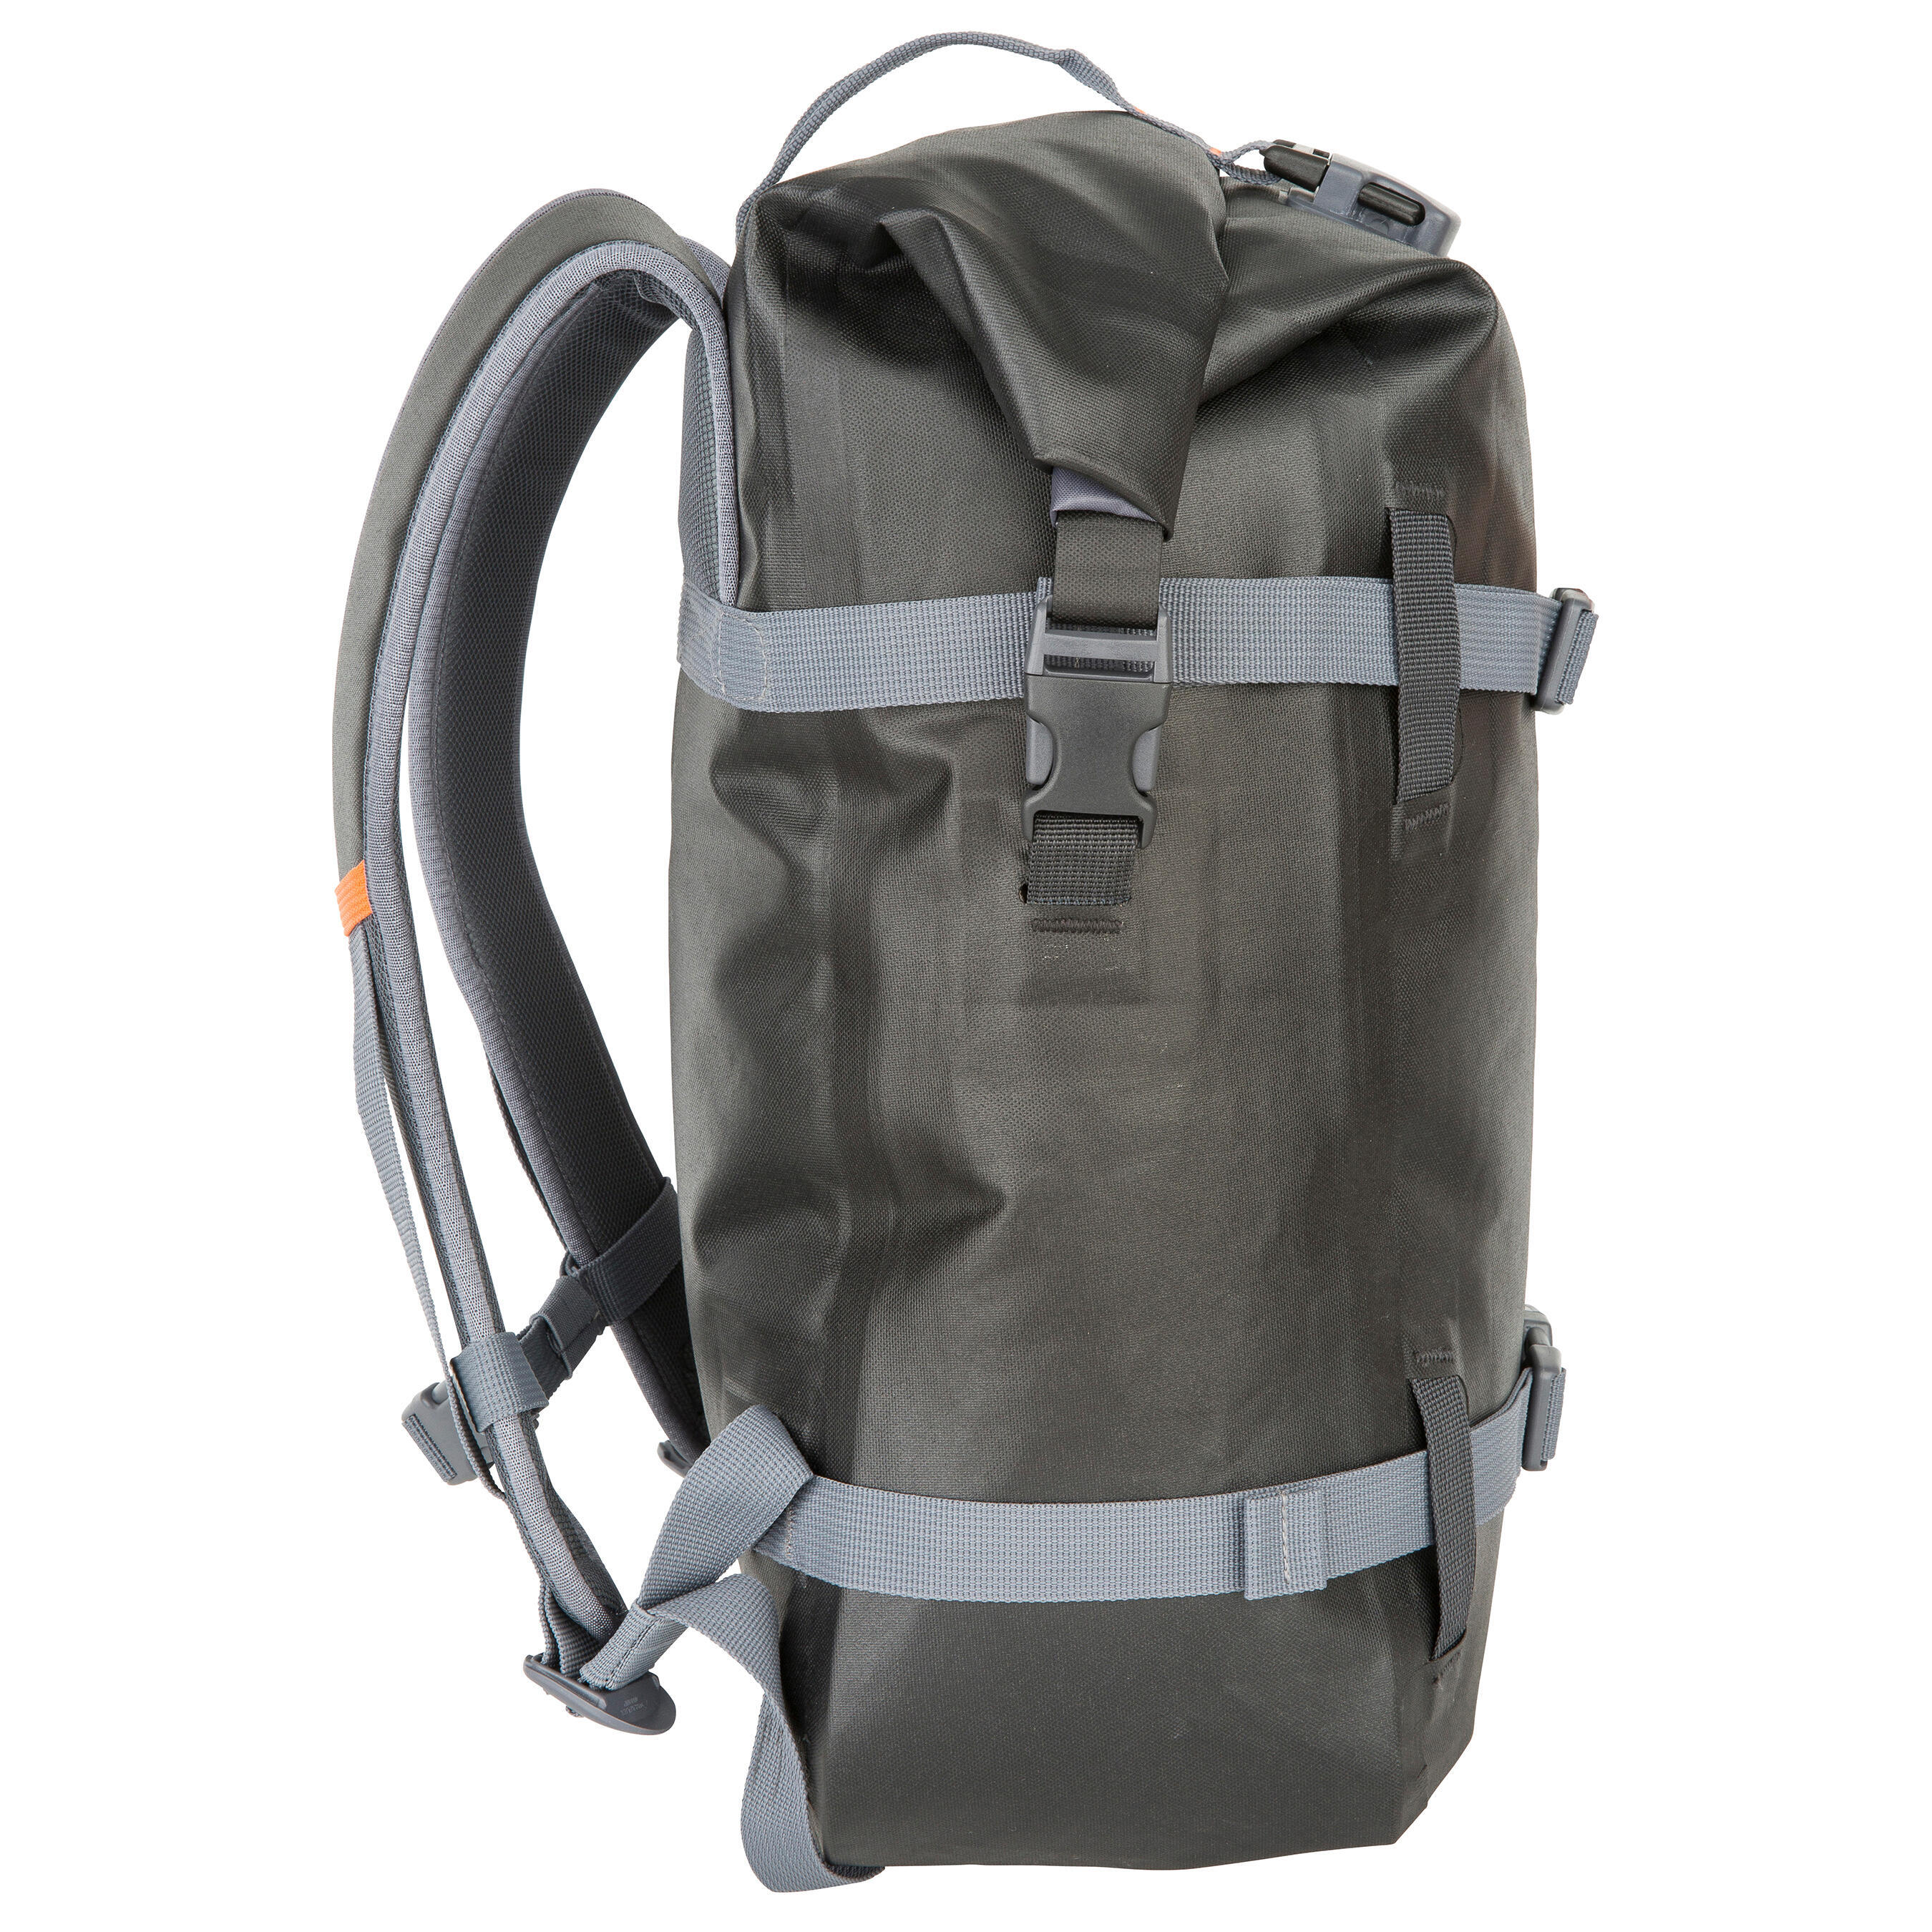 Waterproof Backpack 20L - Black 6/17